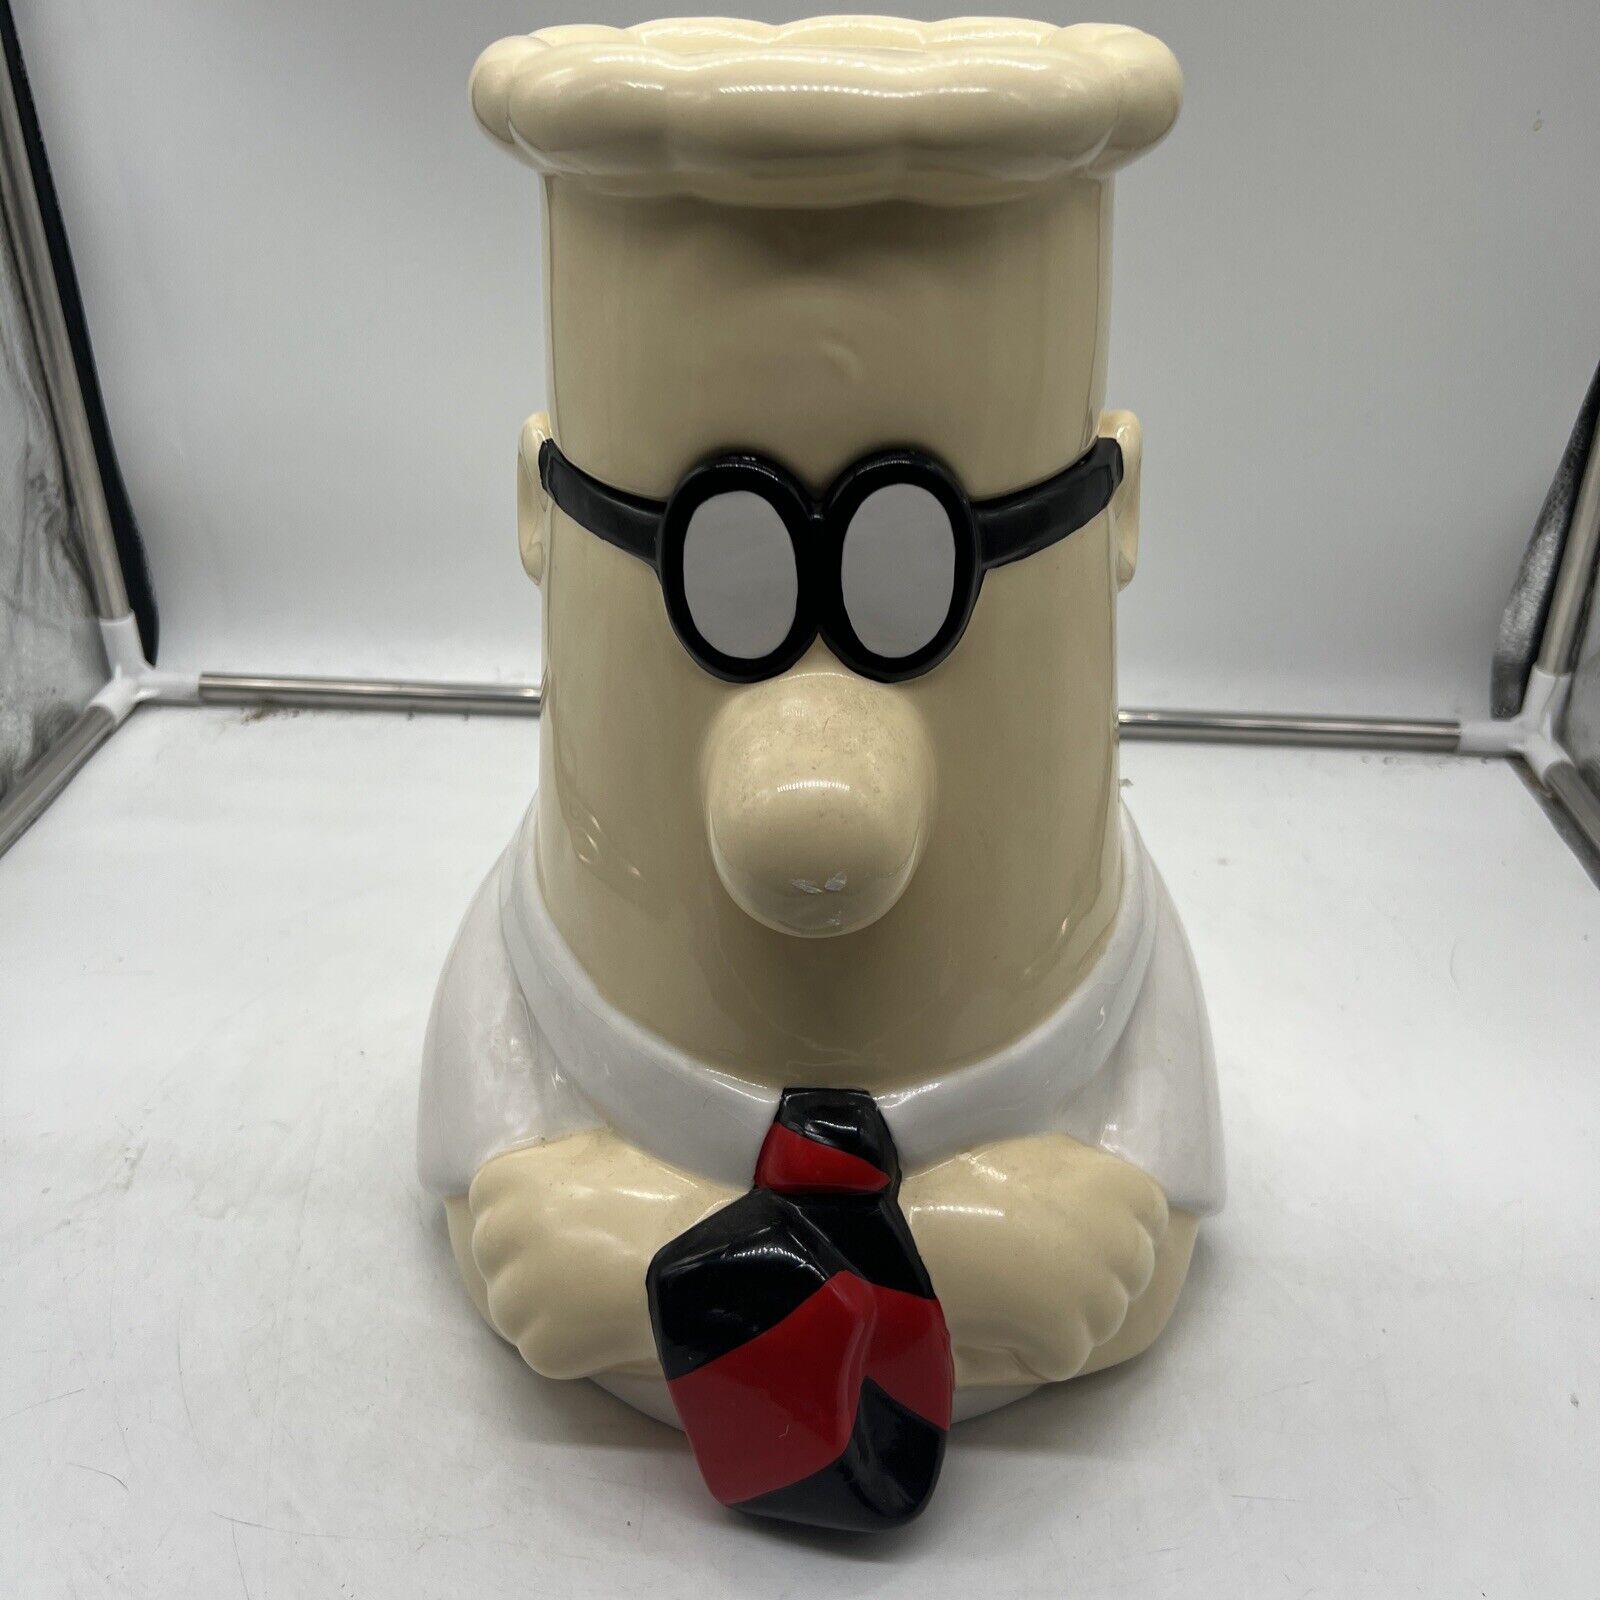 Treasure Craft Dilbert Cookie Jar Collectible Ceramic Kitchen Storage